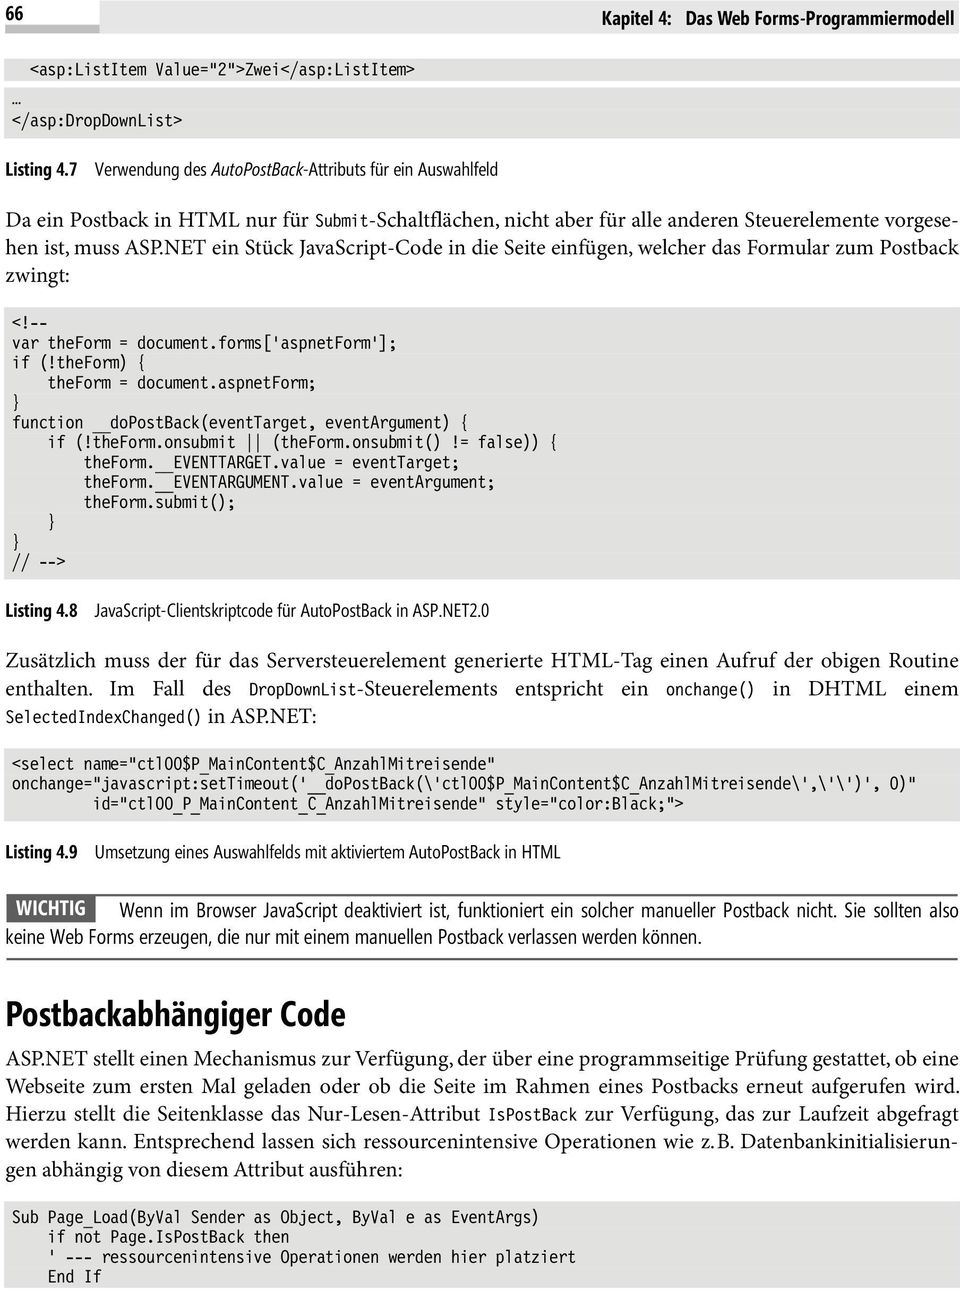 NET ein Stück JavaScript-Code in die Seite einfügen, welcher das Formular zum Postback zwingt: <!-- var theform = document.forms['aspnetform']; if (!theform) { theform = document.